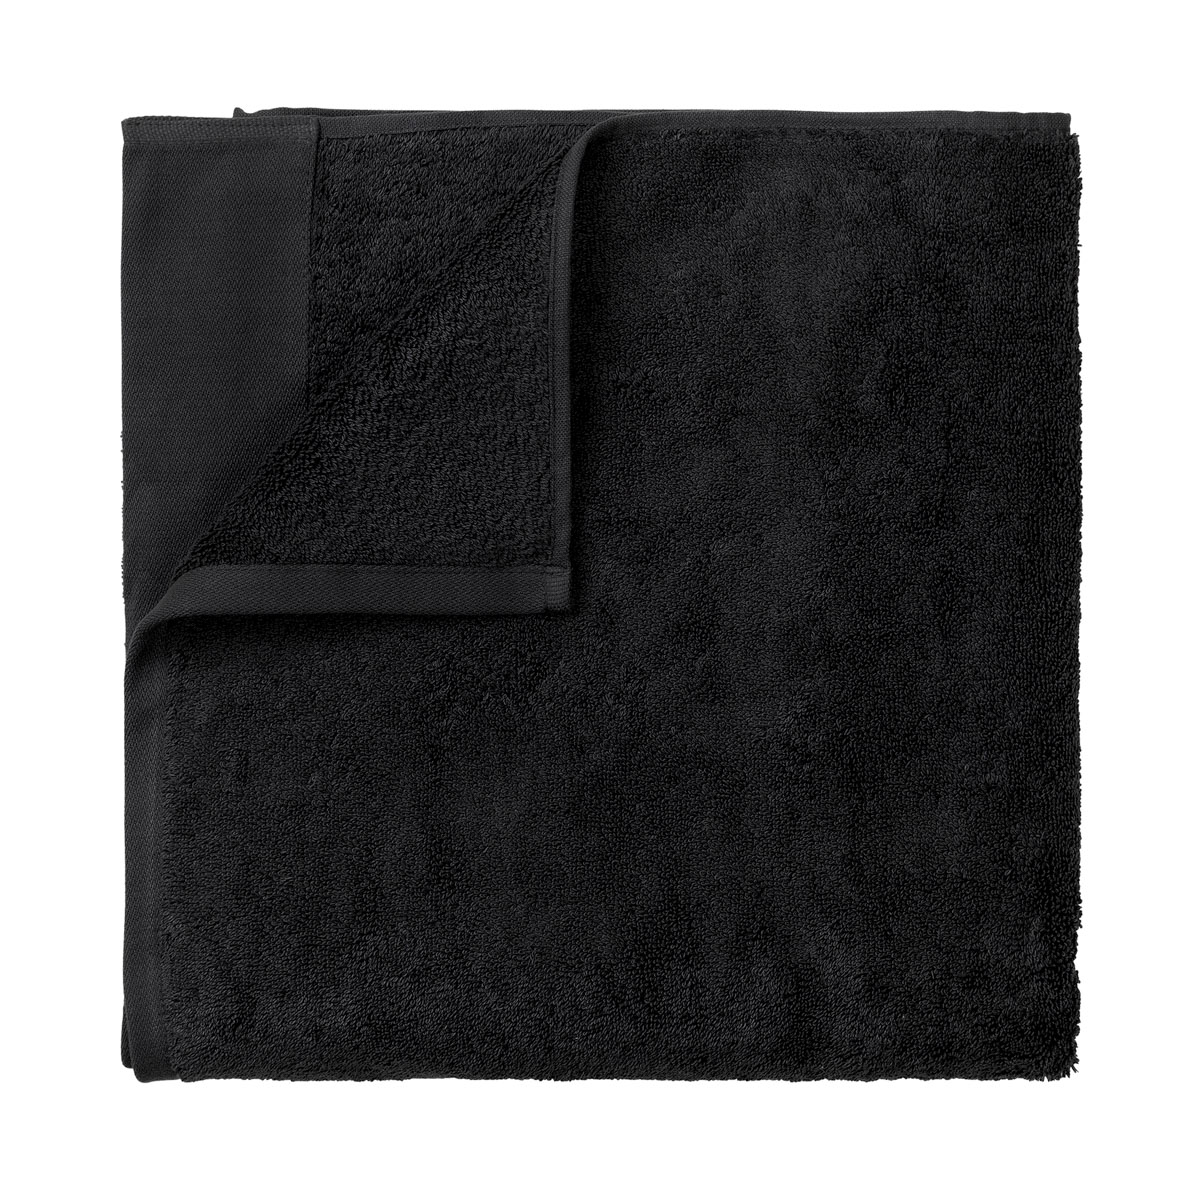 Sauna Handtuch -RIVA- Black. Material: Baumwolle. Von Blomus.